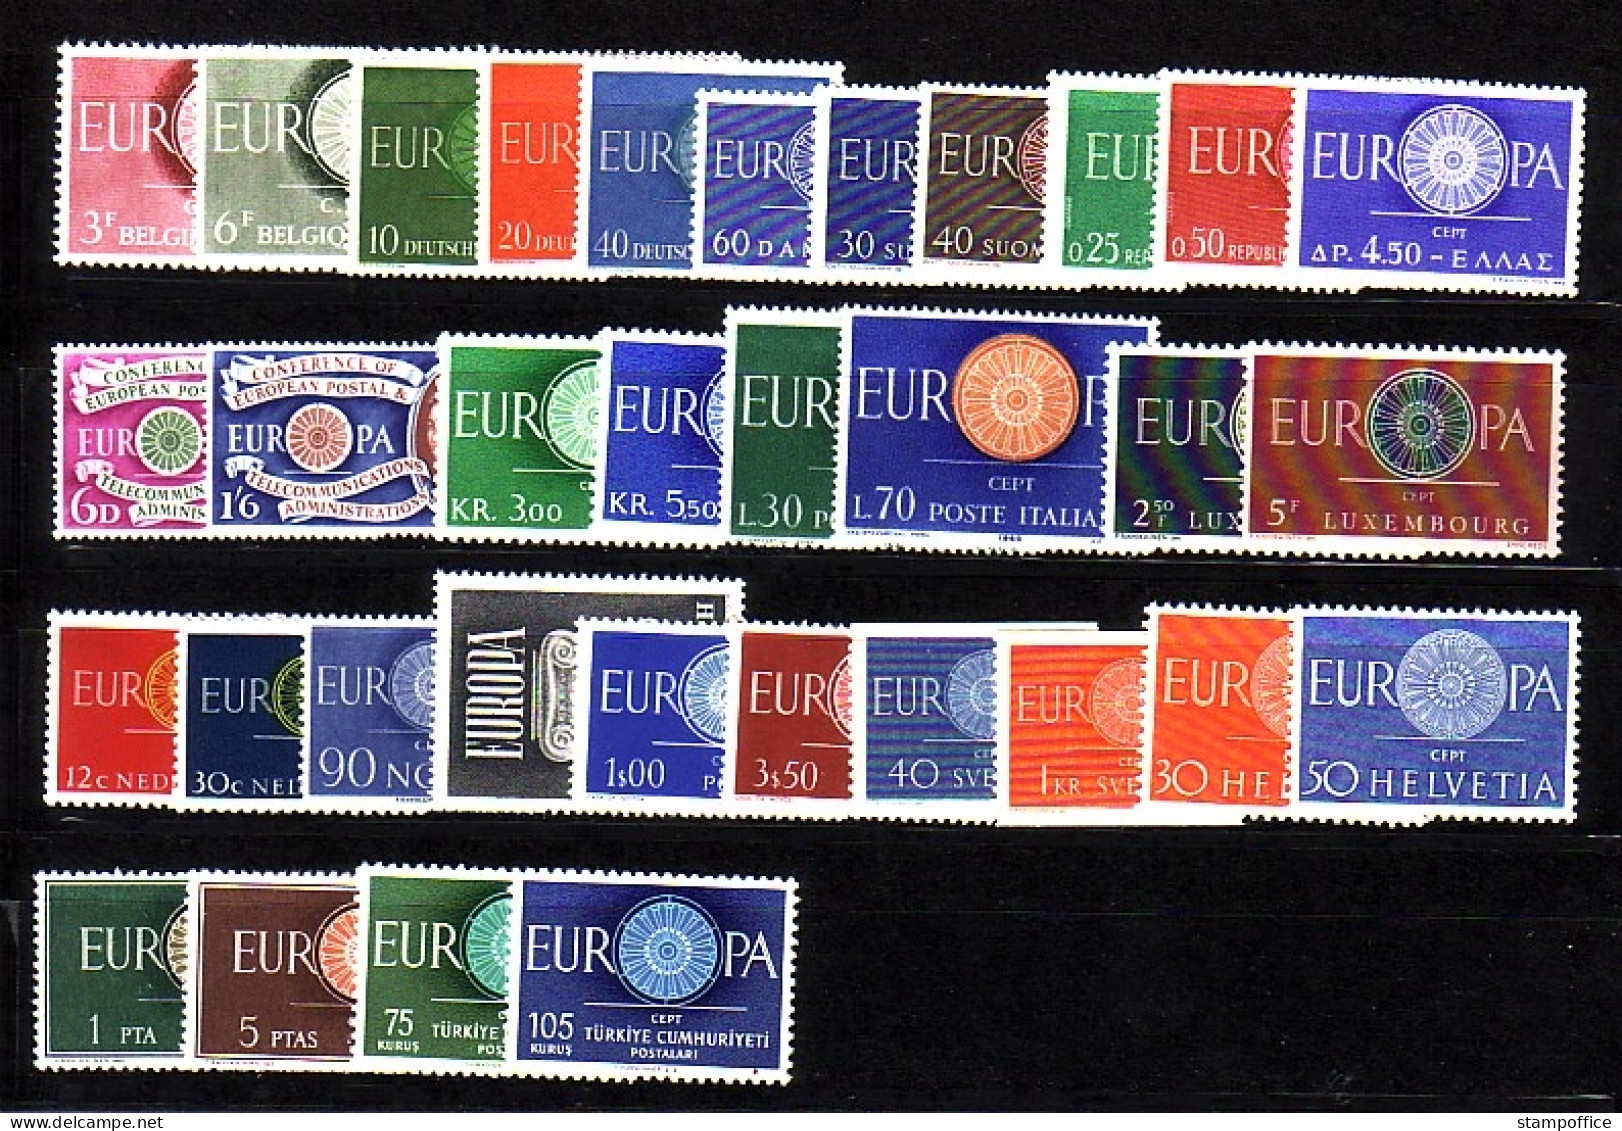 EUROPA CEPT JAHRGANG 1960 POSTFRISCH(MINT) 33 WERTE OHNE IRLAND UND LIECHTENSTEIN - 1960